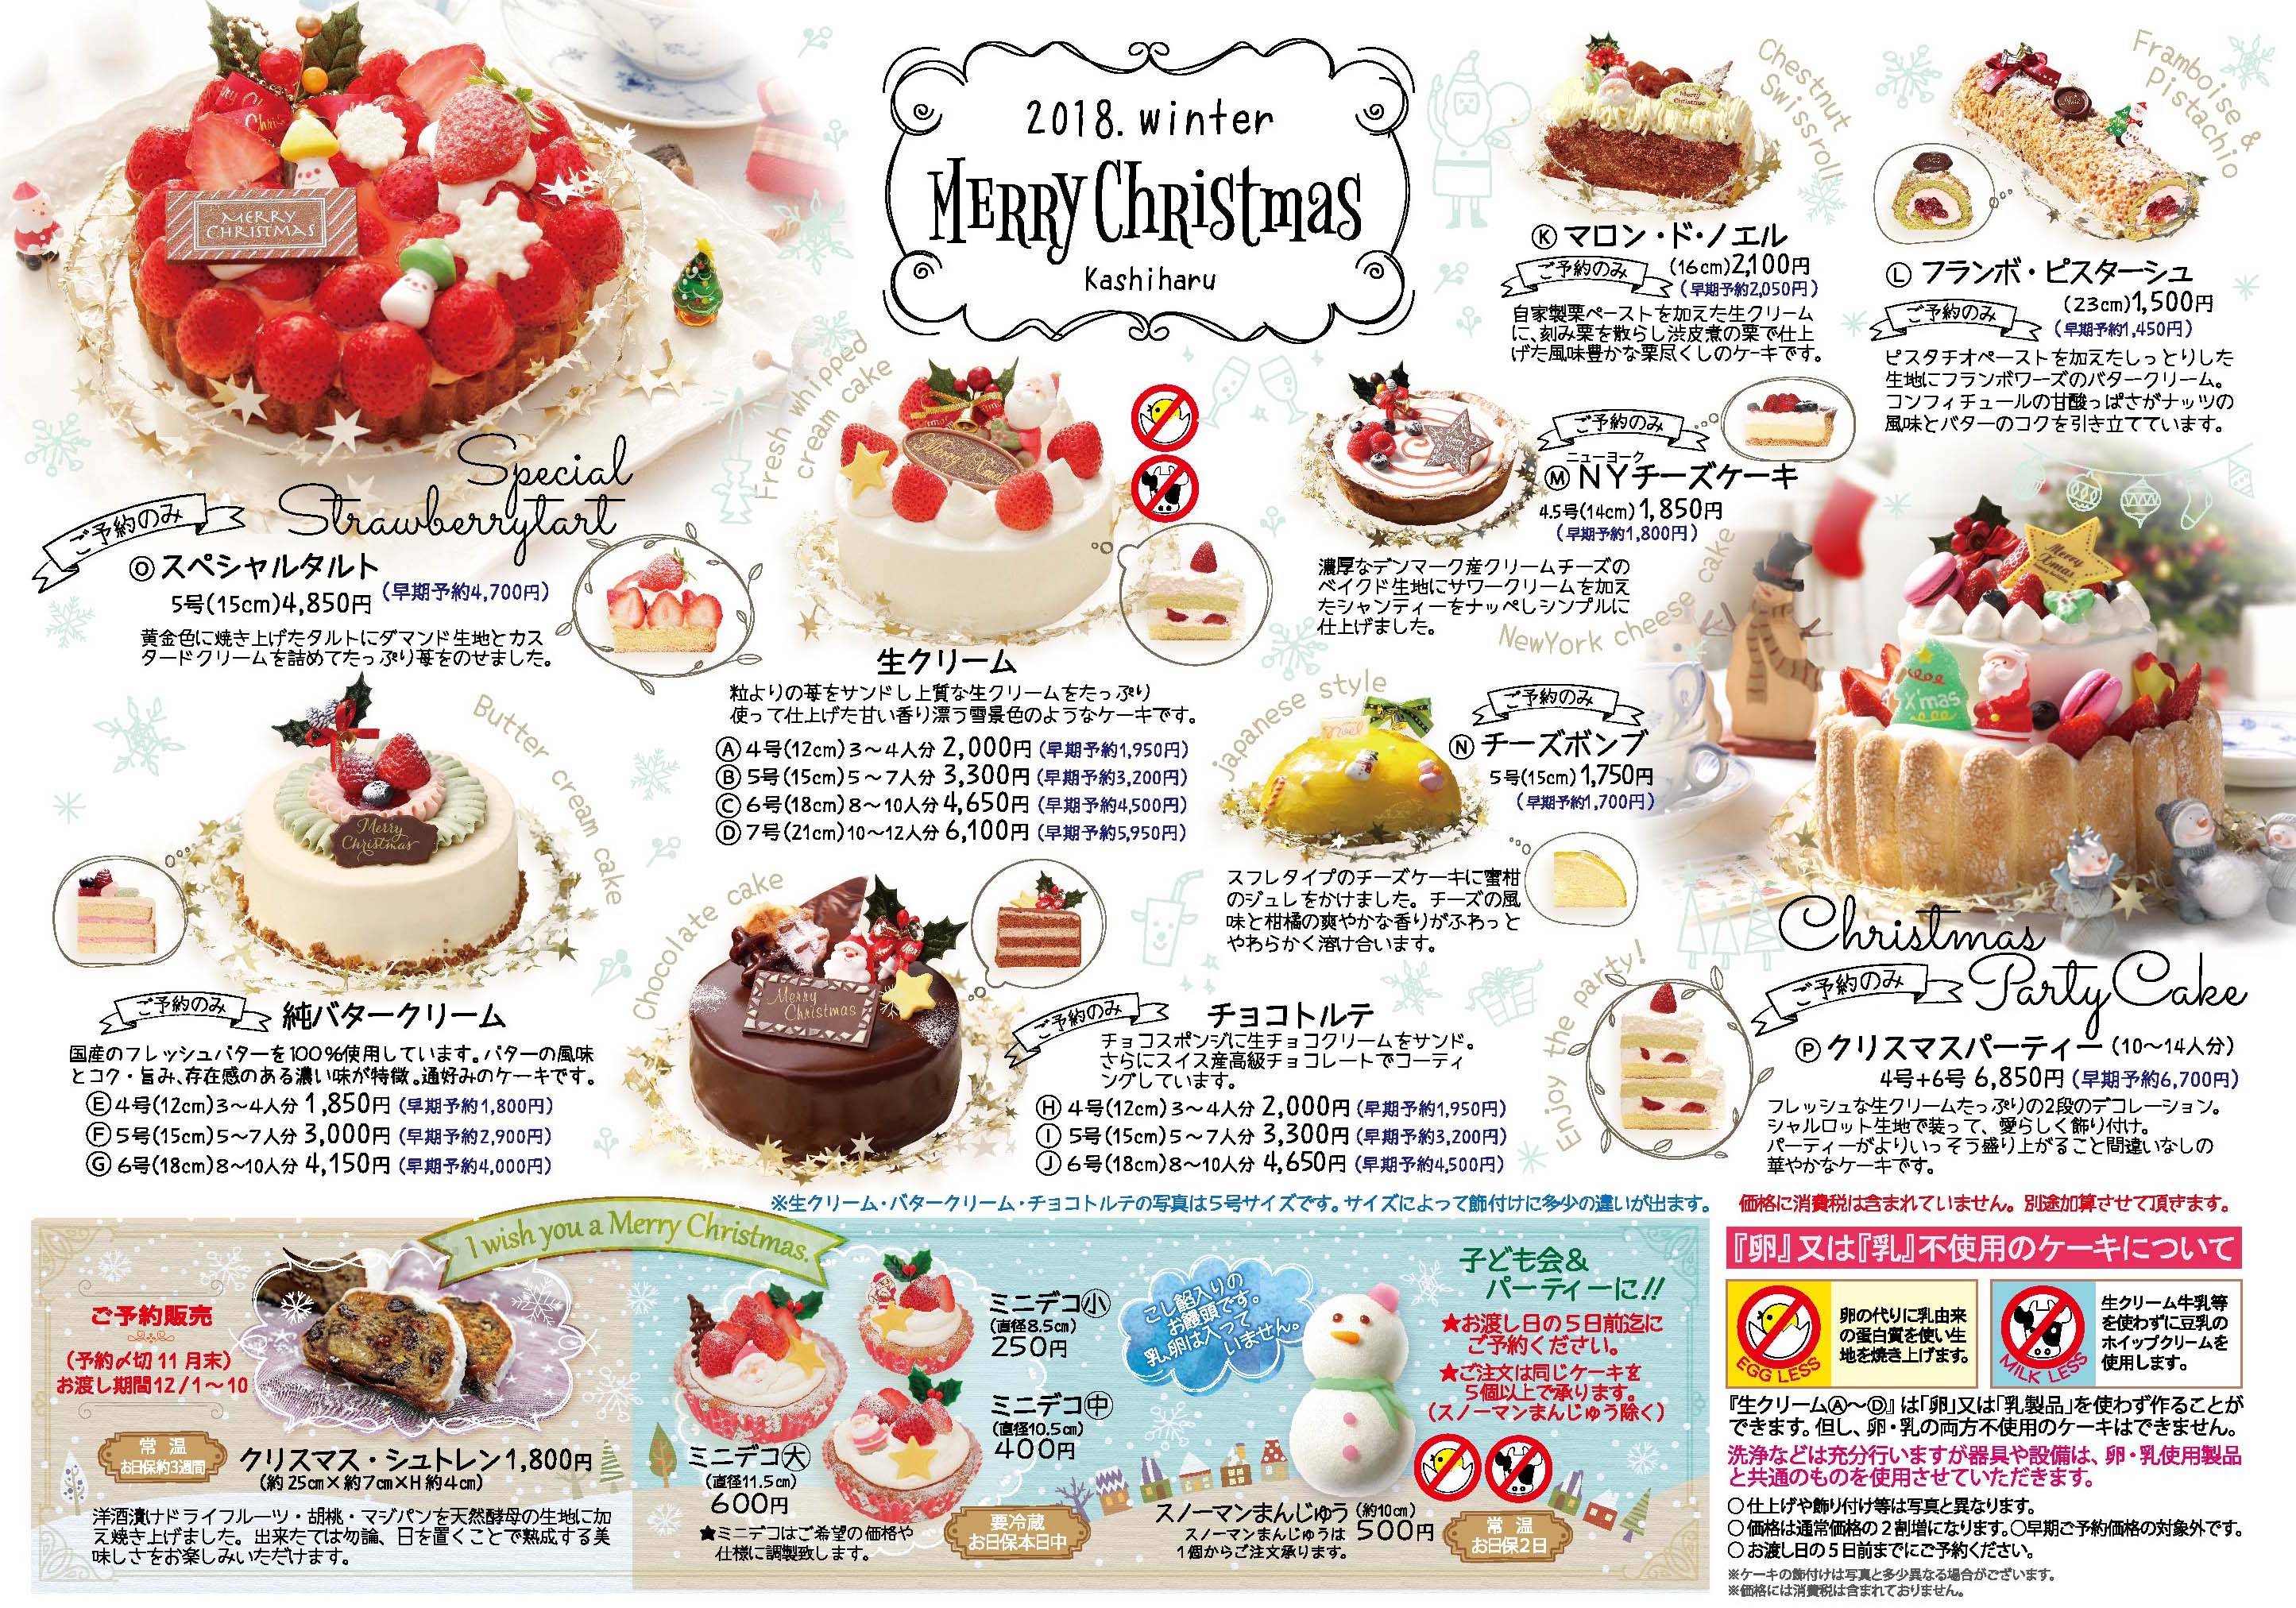 クリスマスケーキご予約承り中 郷土菓子店かしはる 静岡県焼津市にあります郷土菓子店かしはるです